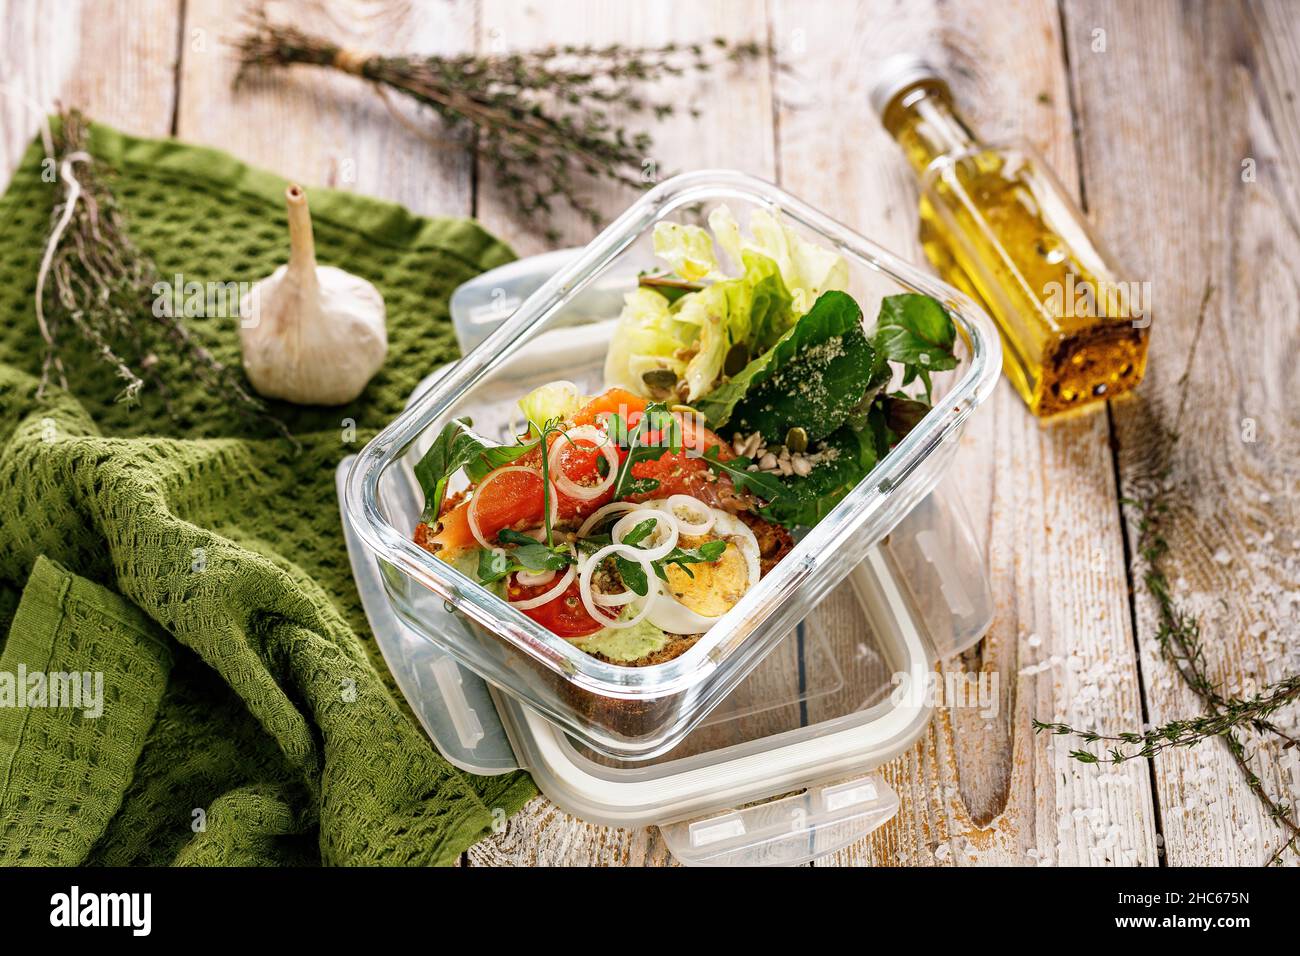 Déjeuner délicieux et sain avec filet de saumon dans une boîte à lunch en verre.Salade avec saumon fumé, fromage doux, œufs, oignons et légumes.Fruits de mer Banque D'Images